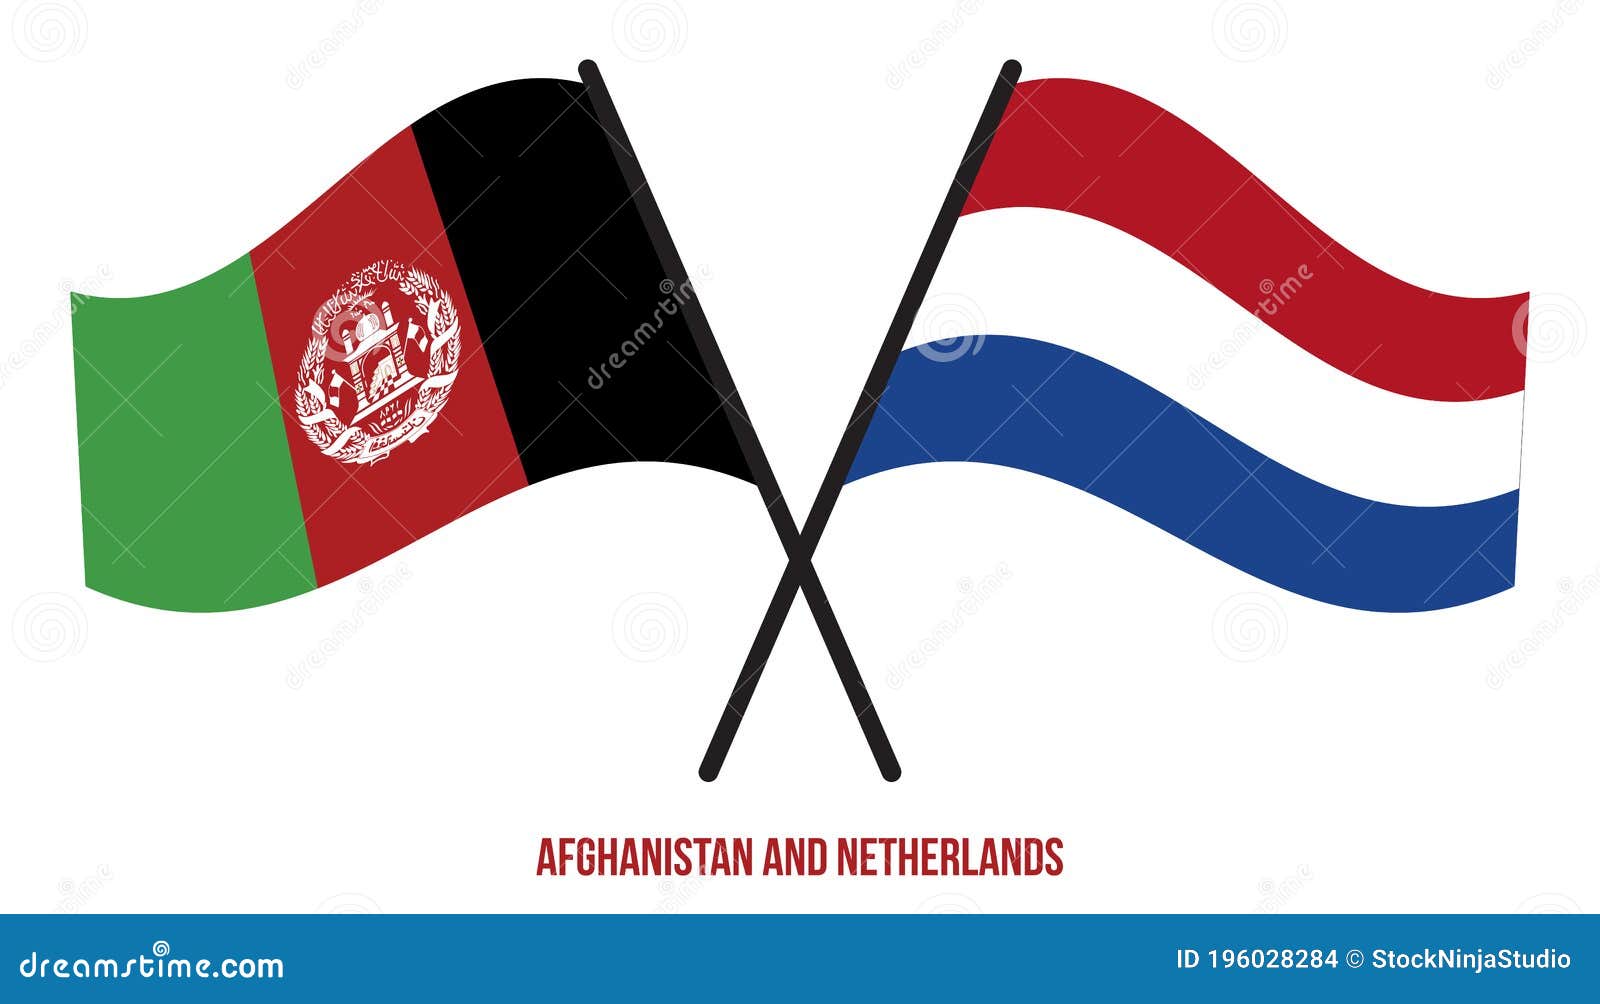 Afghanistan vs netherlands